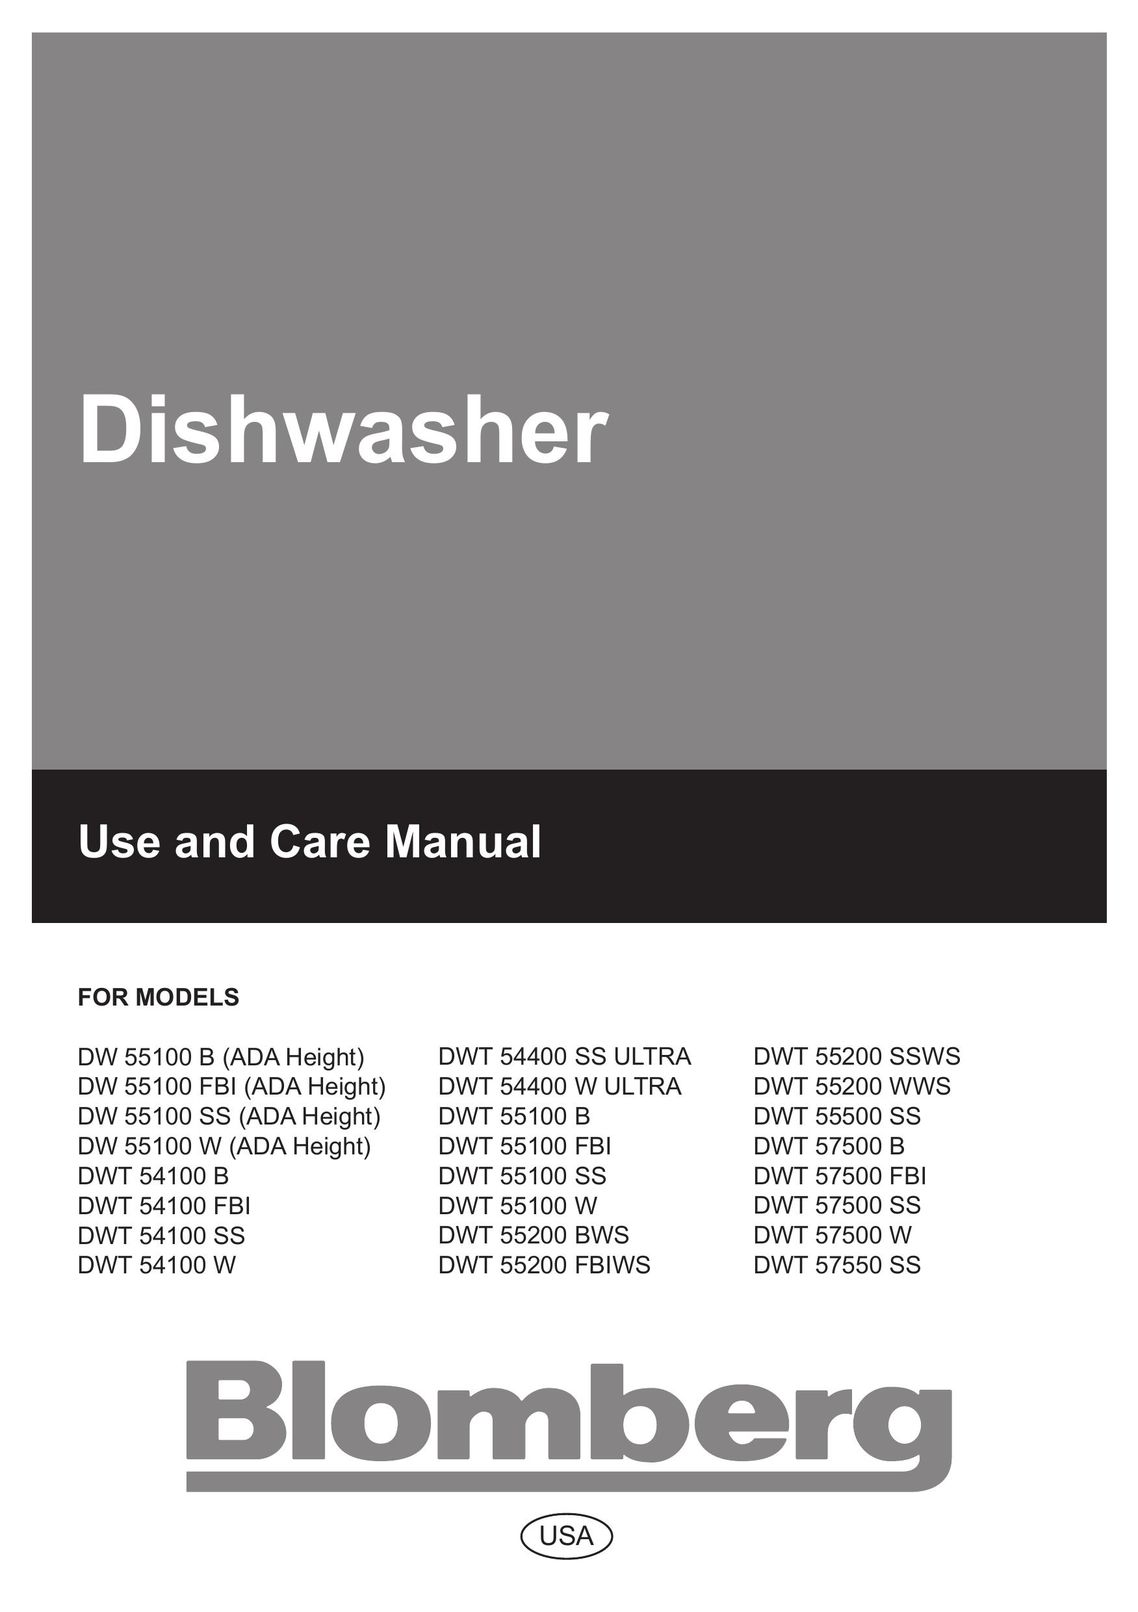 Blomberg DW 55200 WWS Dishwasher User Manual